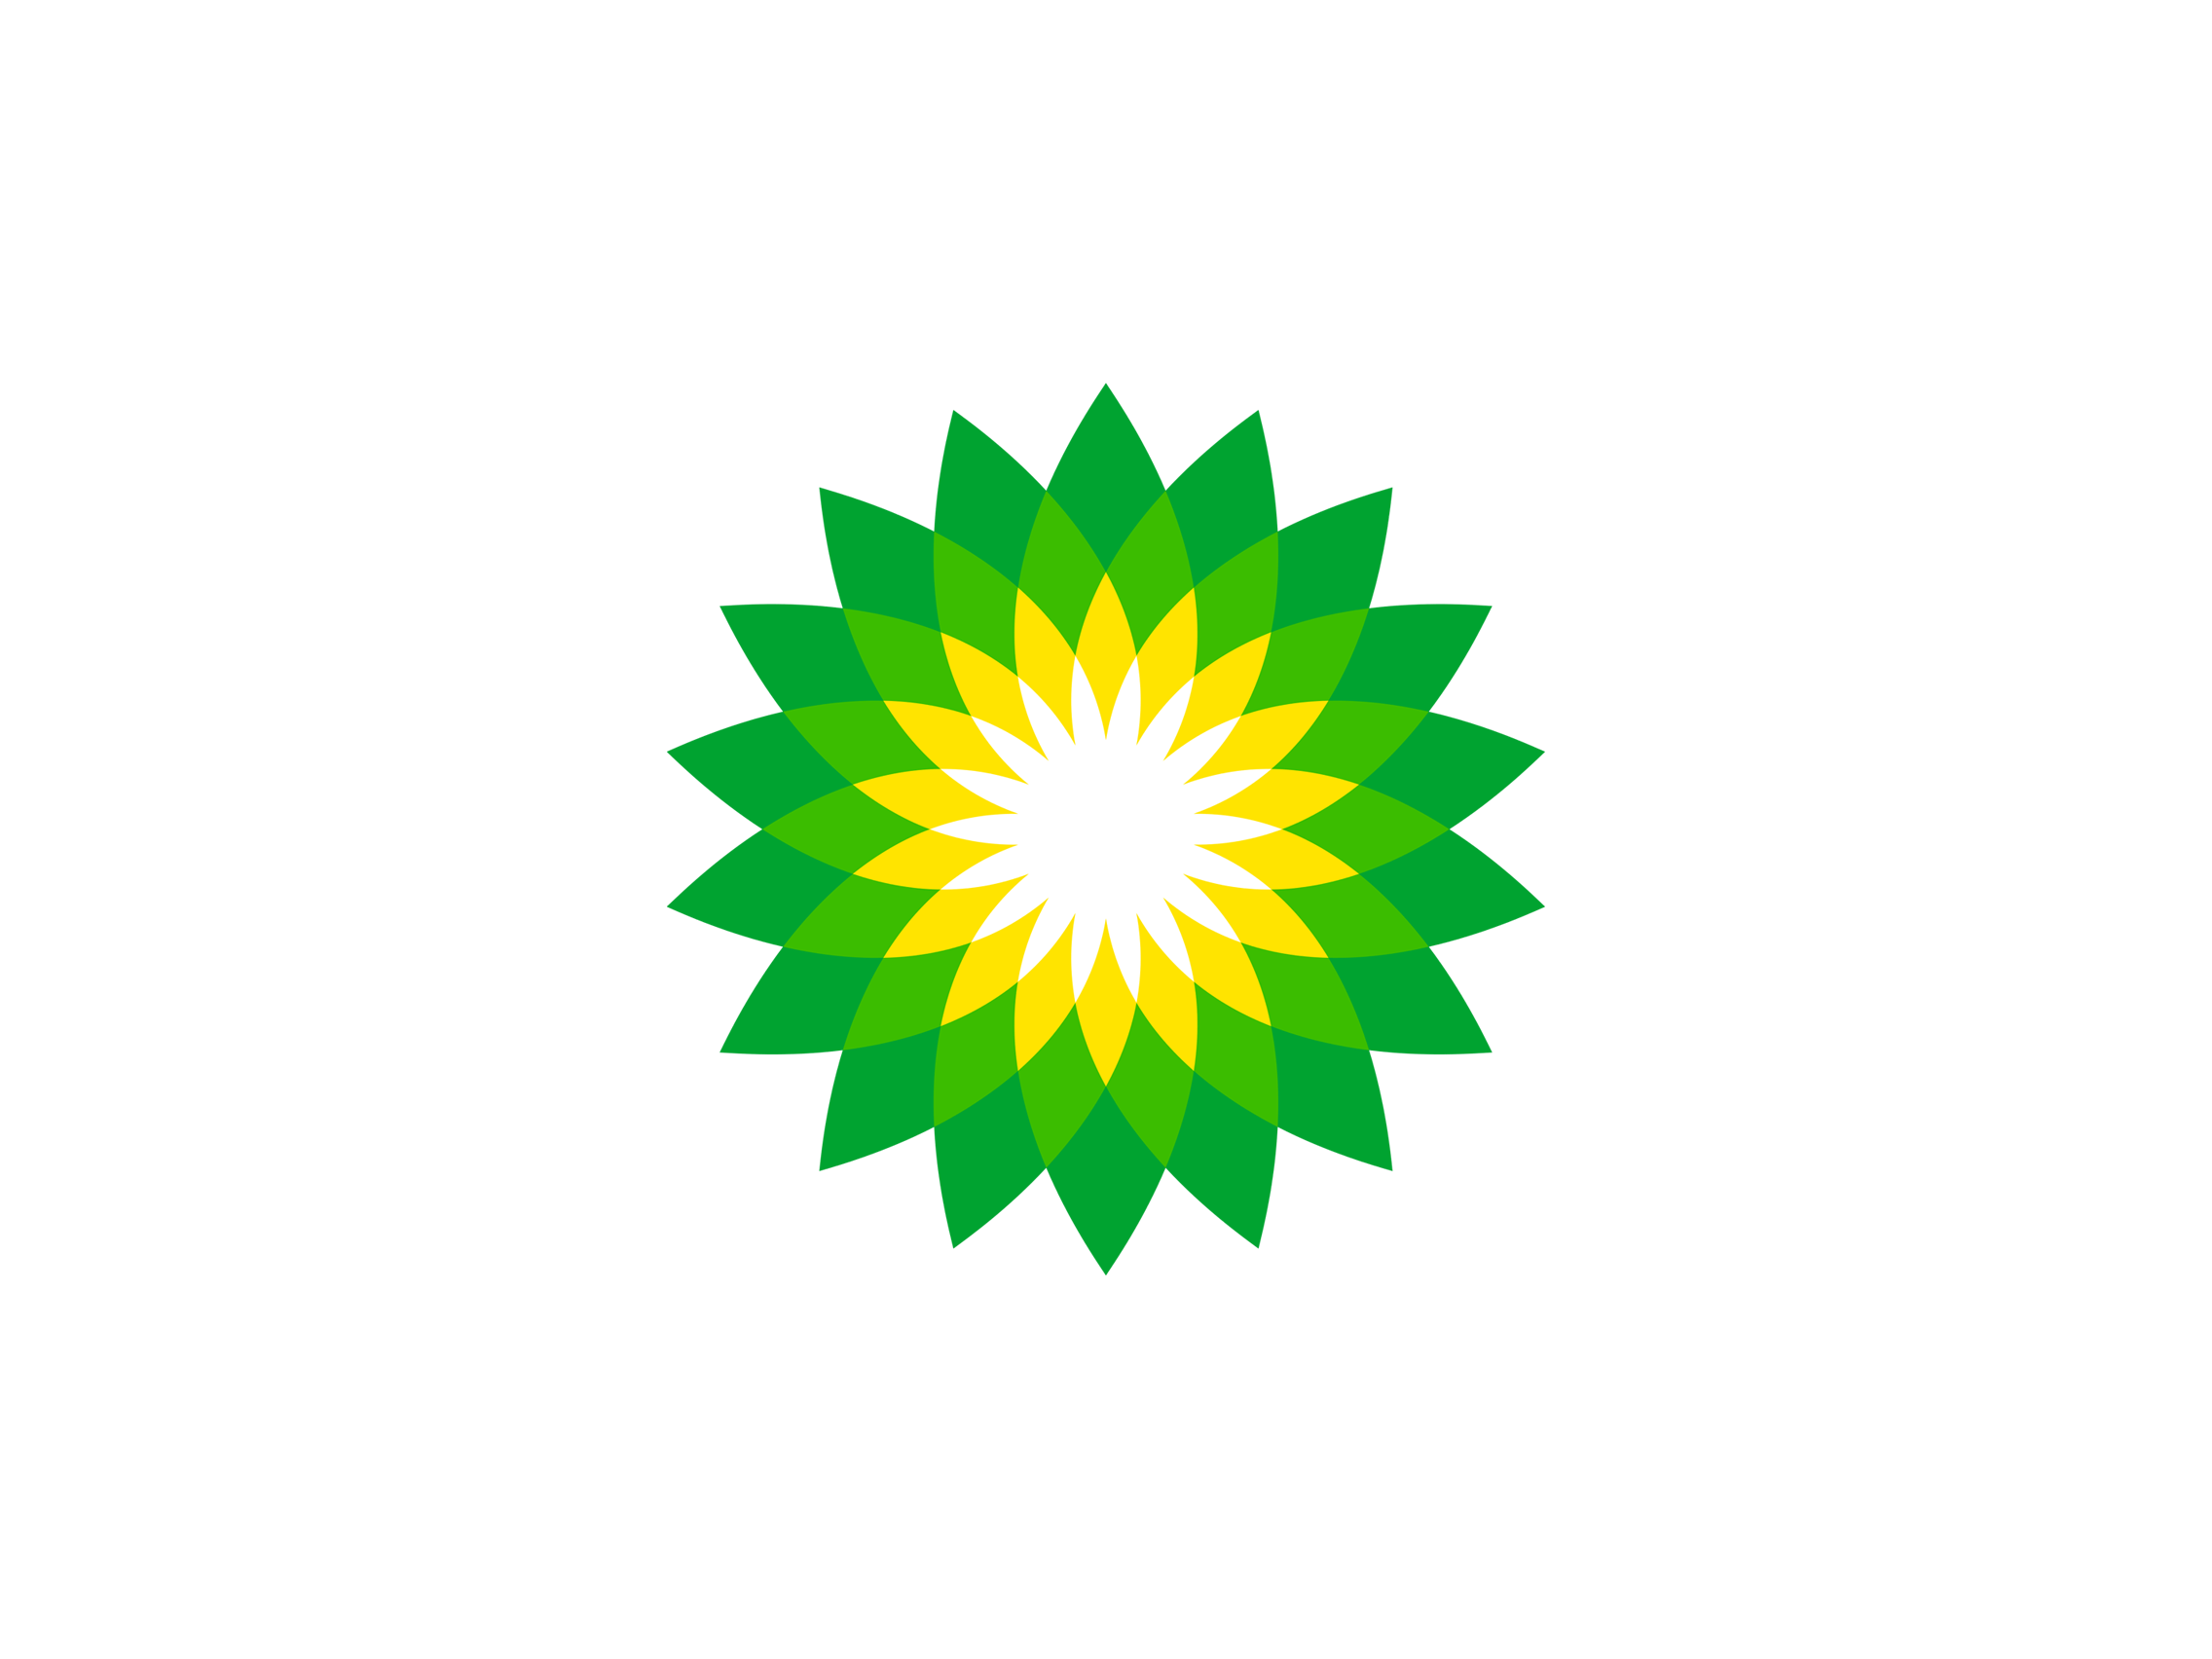 BP Green Logo - Bp Logos